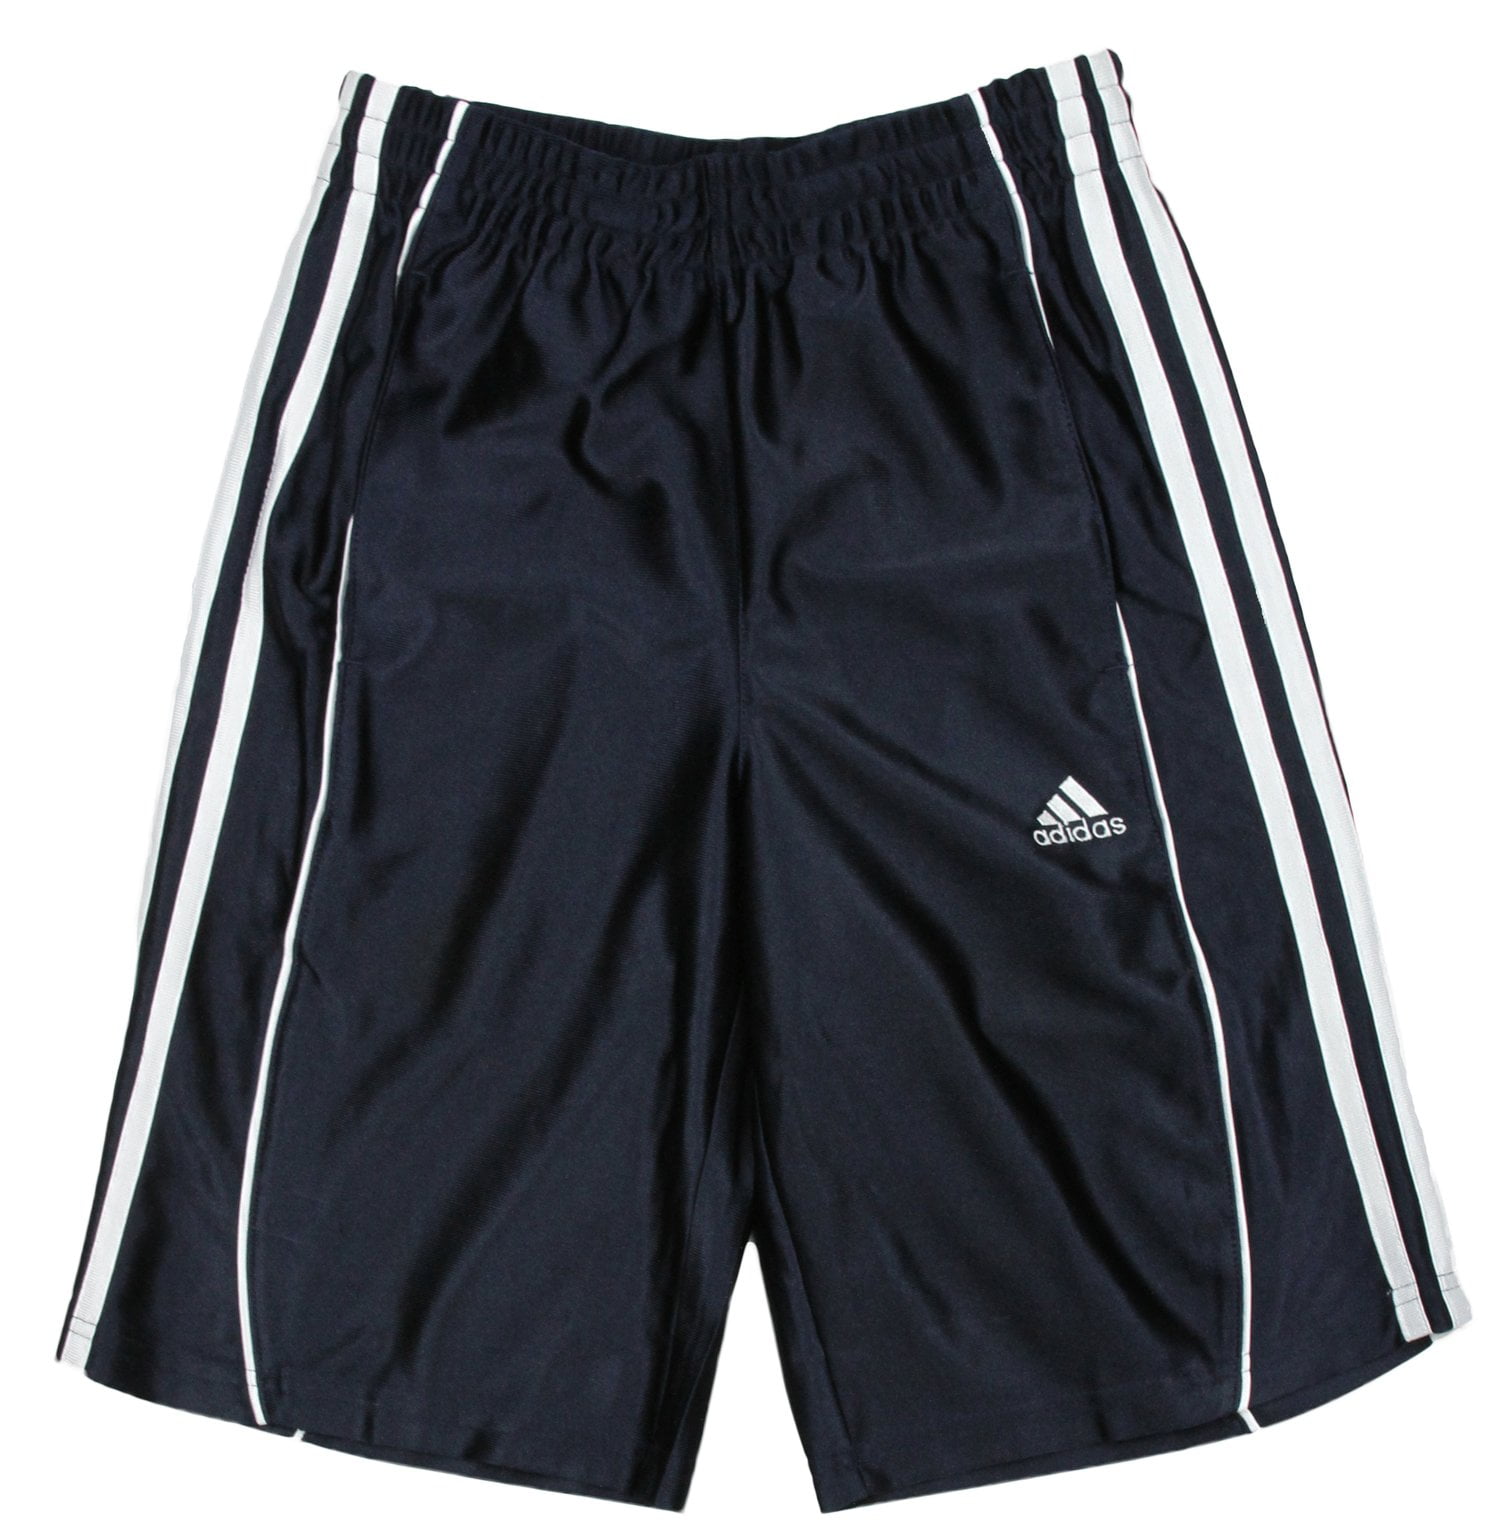 Adidas Youth Boys Basic Athletic 3 Stripe Basketball Shorts, Navy ...